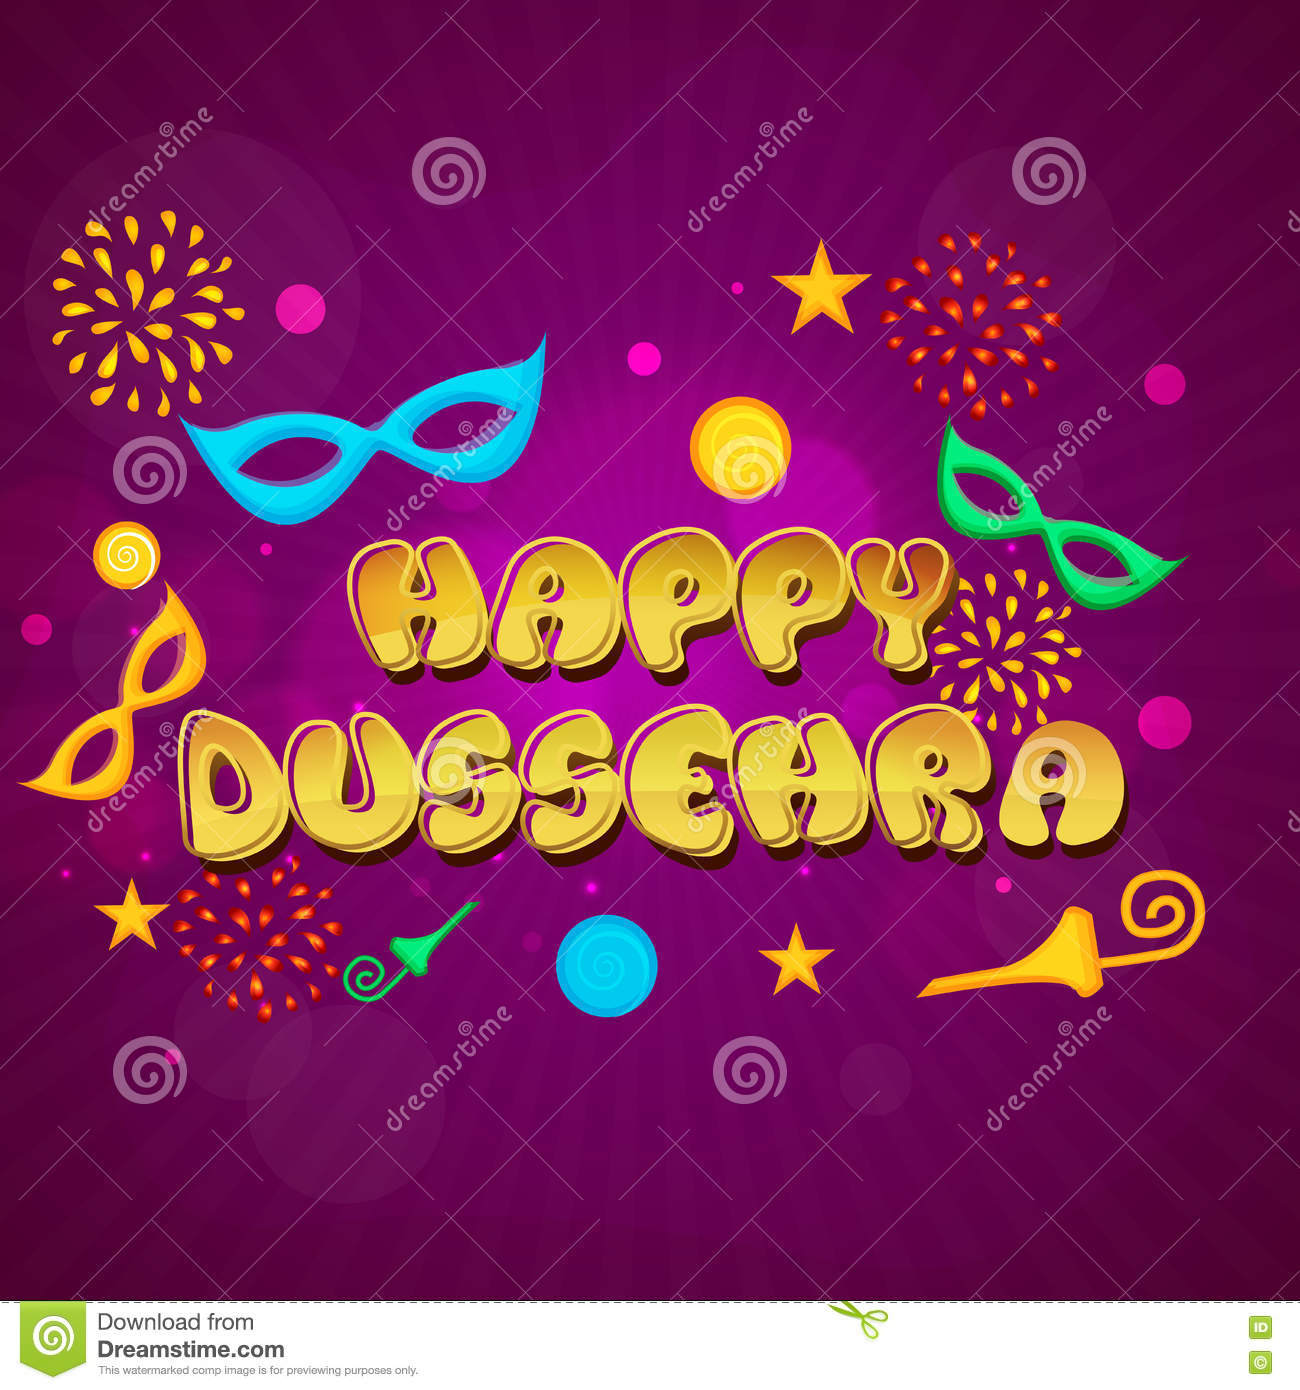 Happy Dussehra 2019 Images